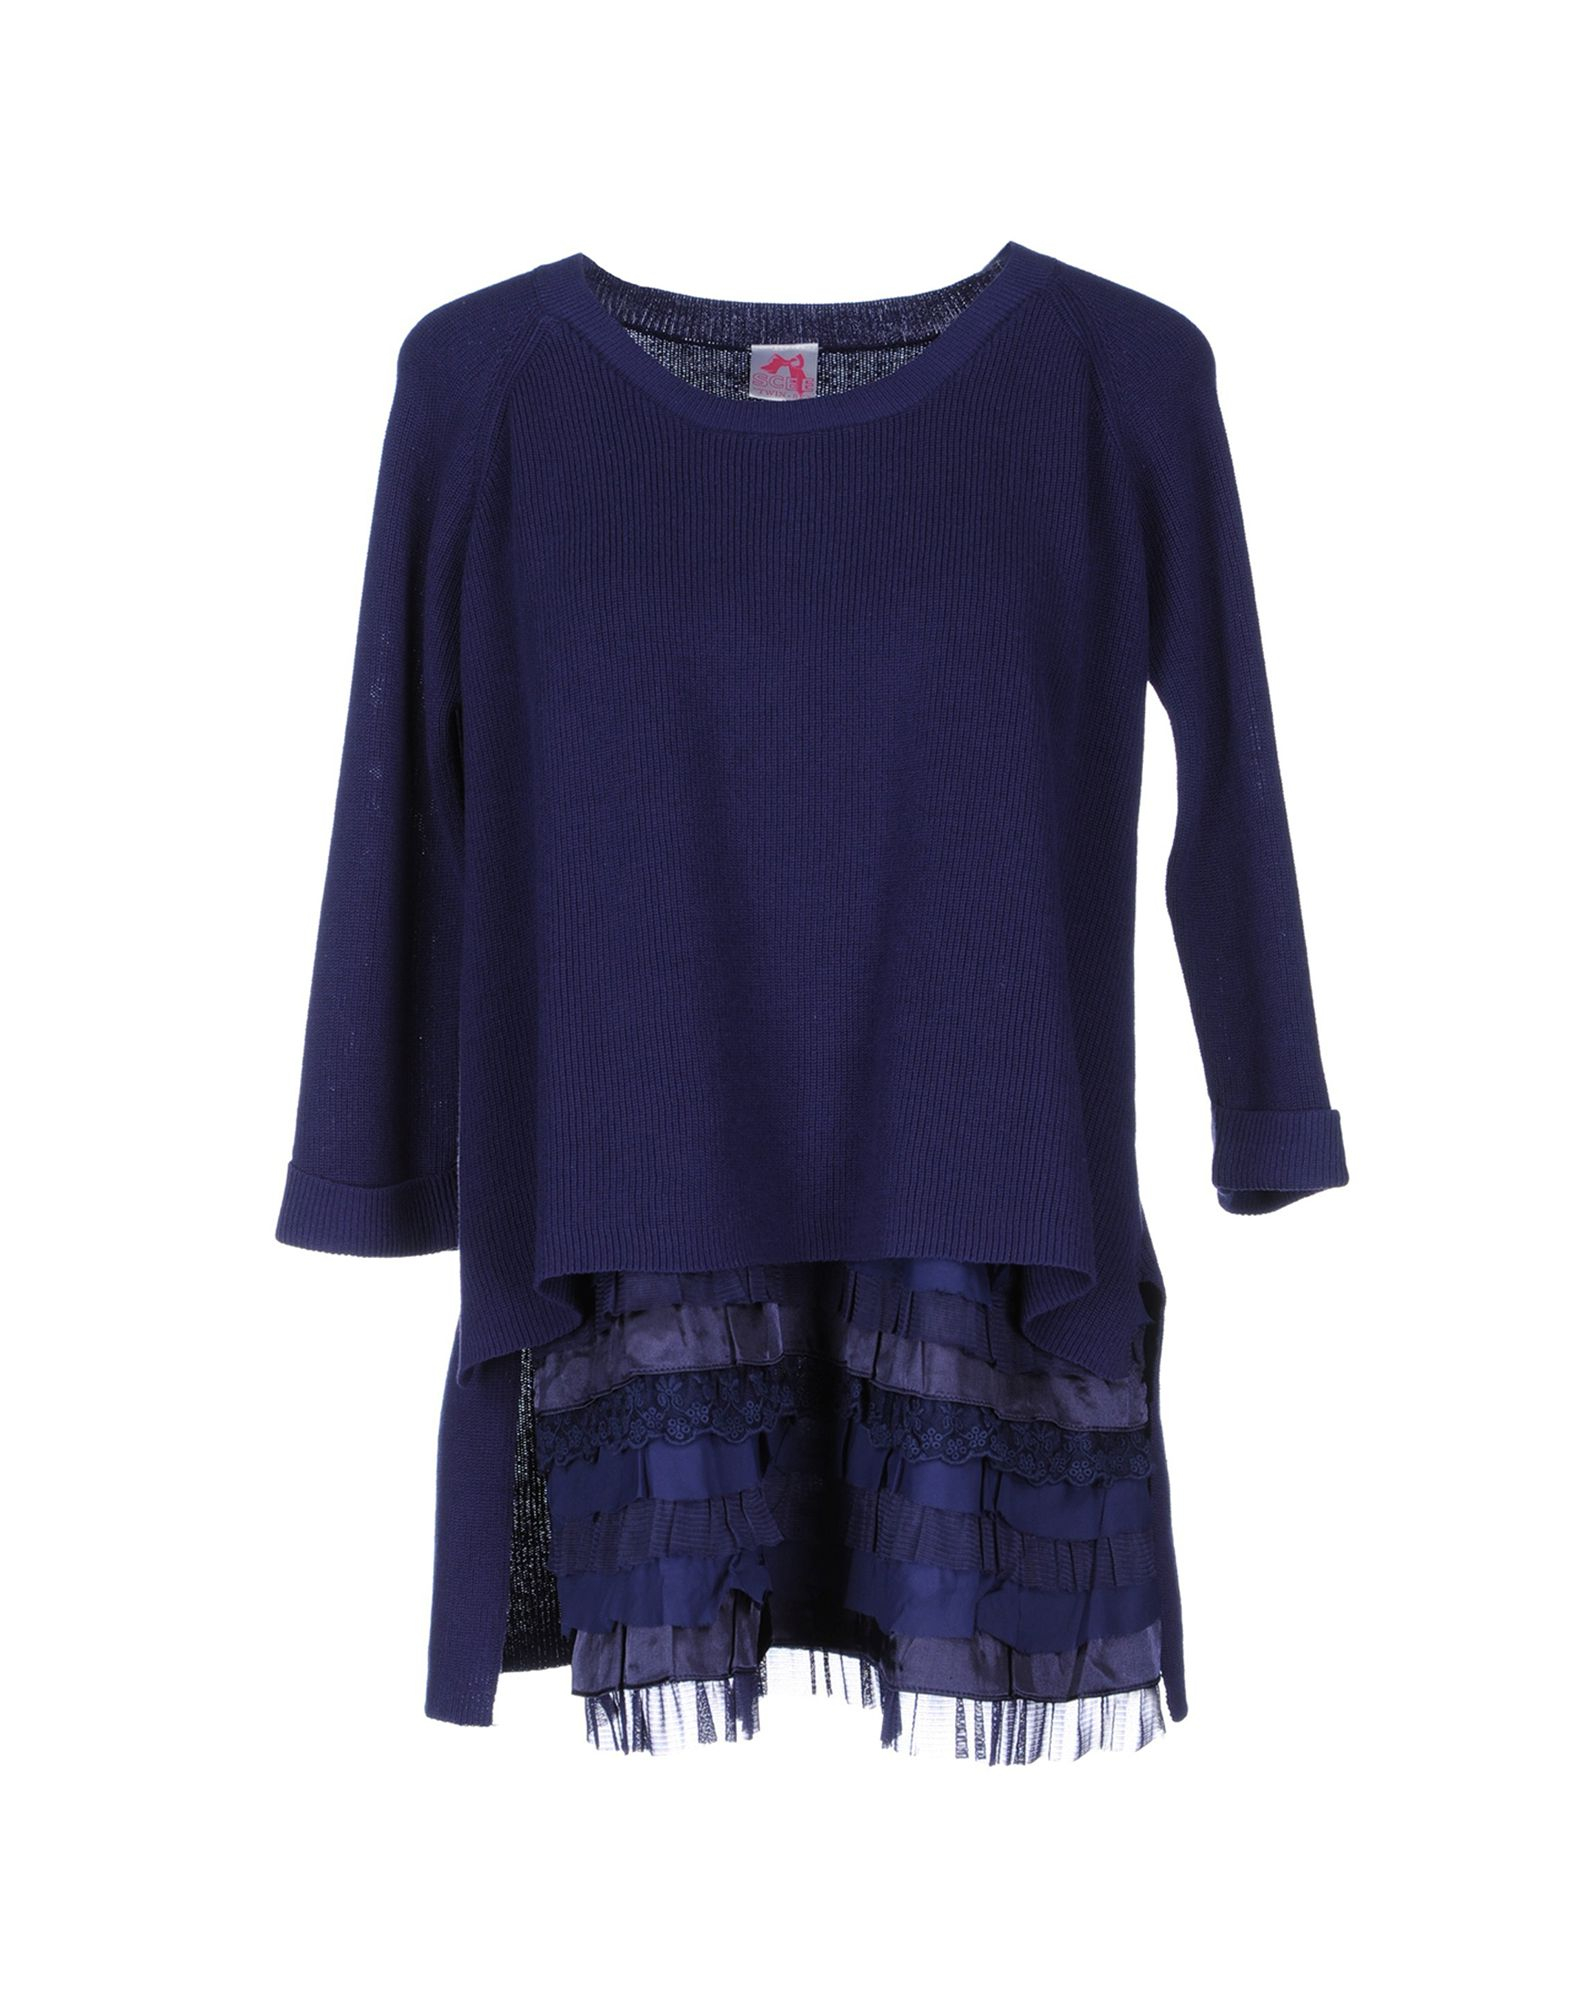 Scee By Twin-set Short Sleeve Sweater in Blue (Dark blue) | Lyst